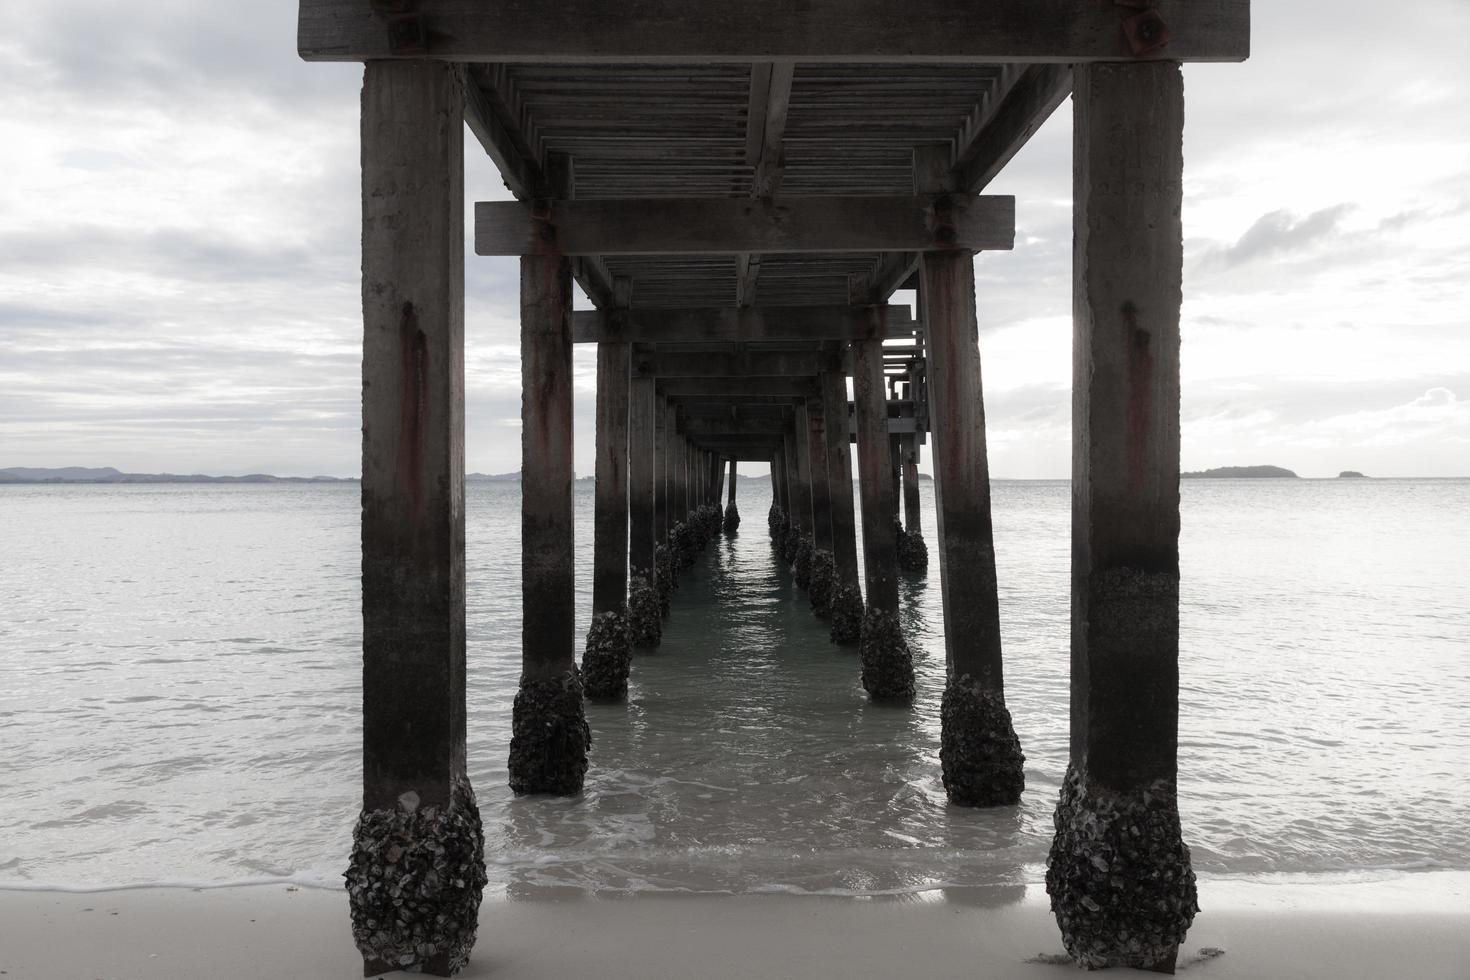 Under the wooden pier photo